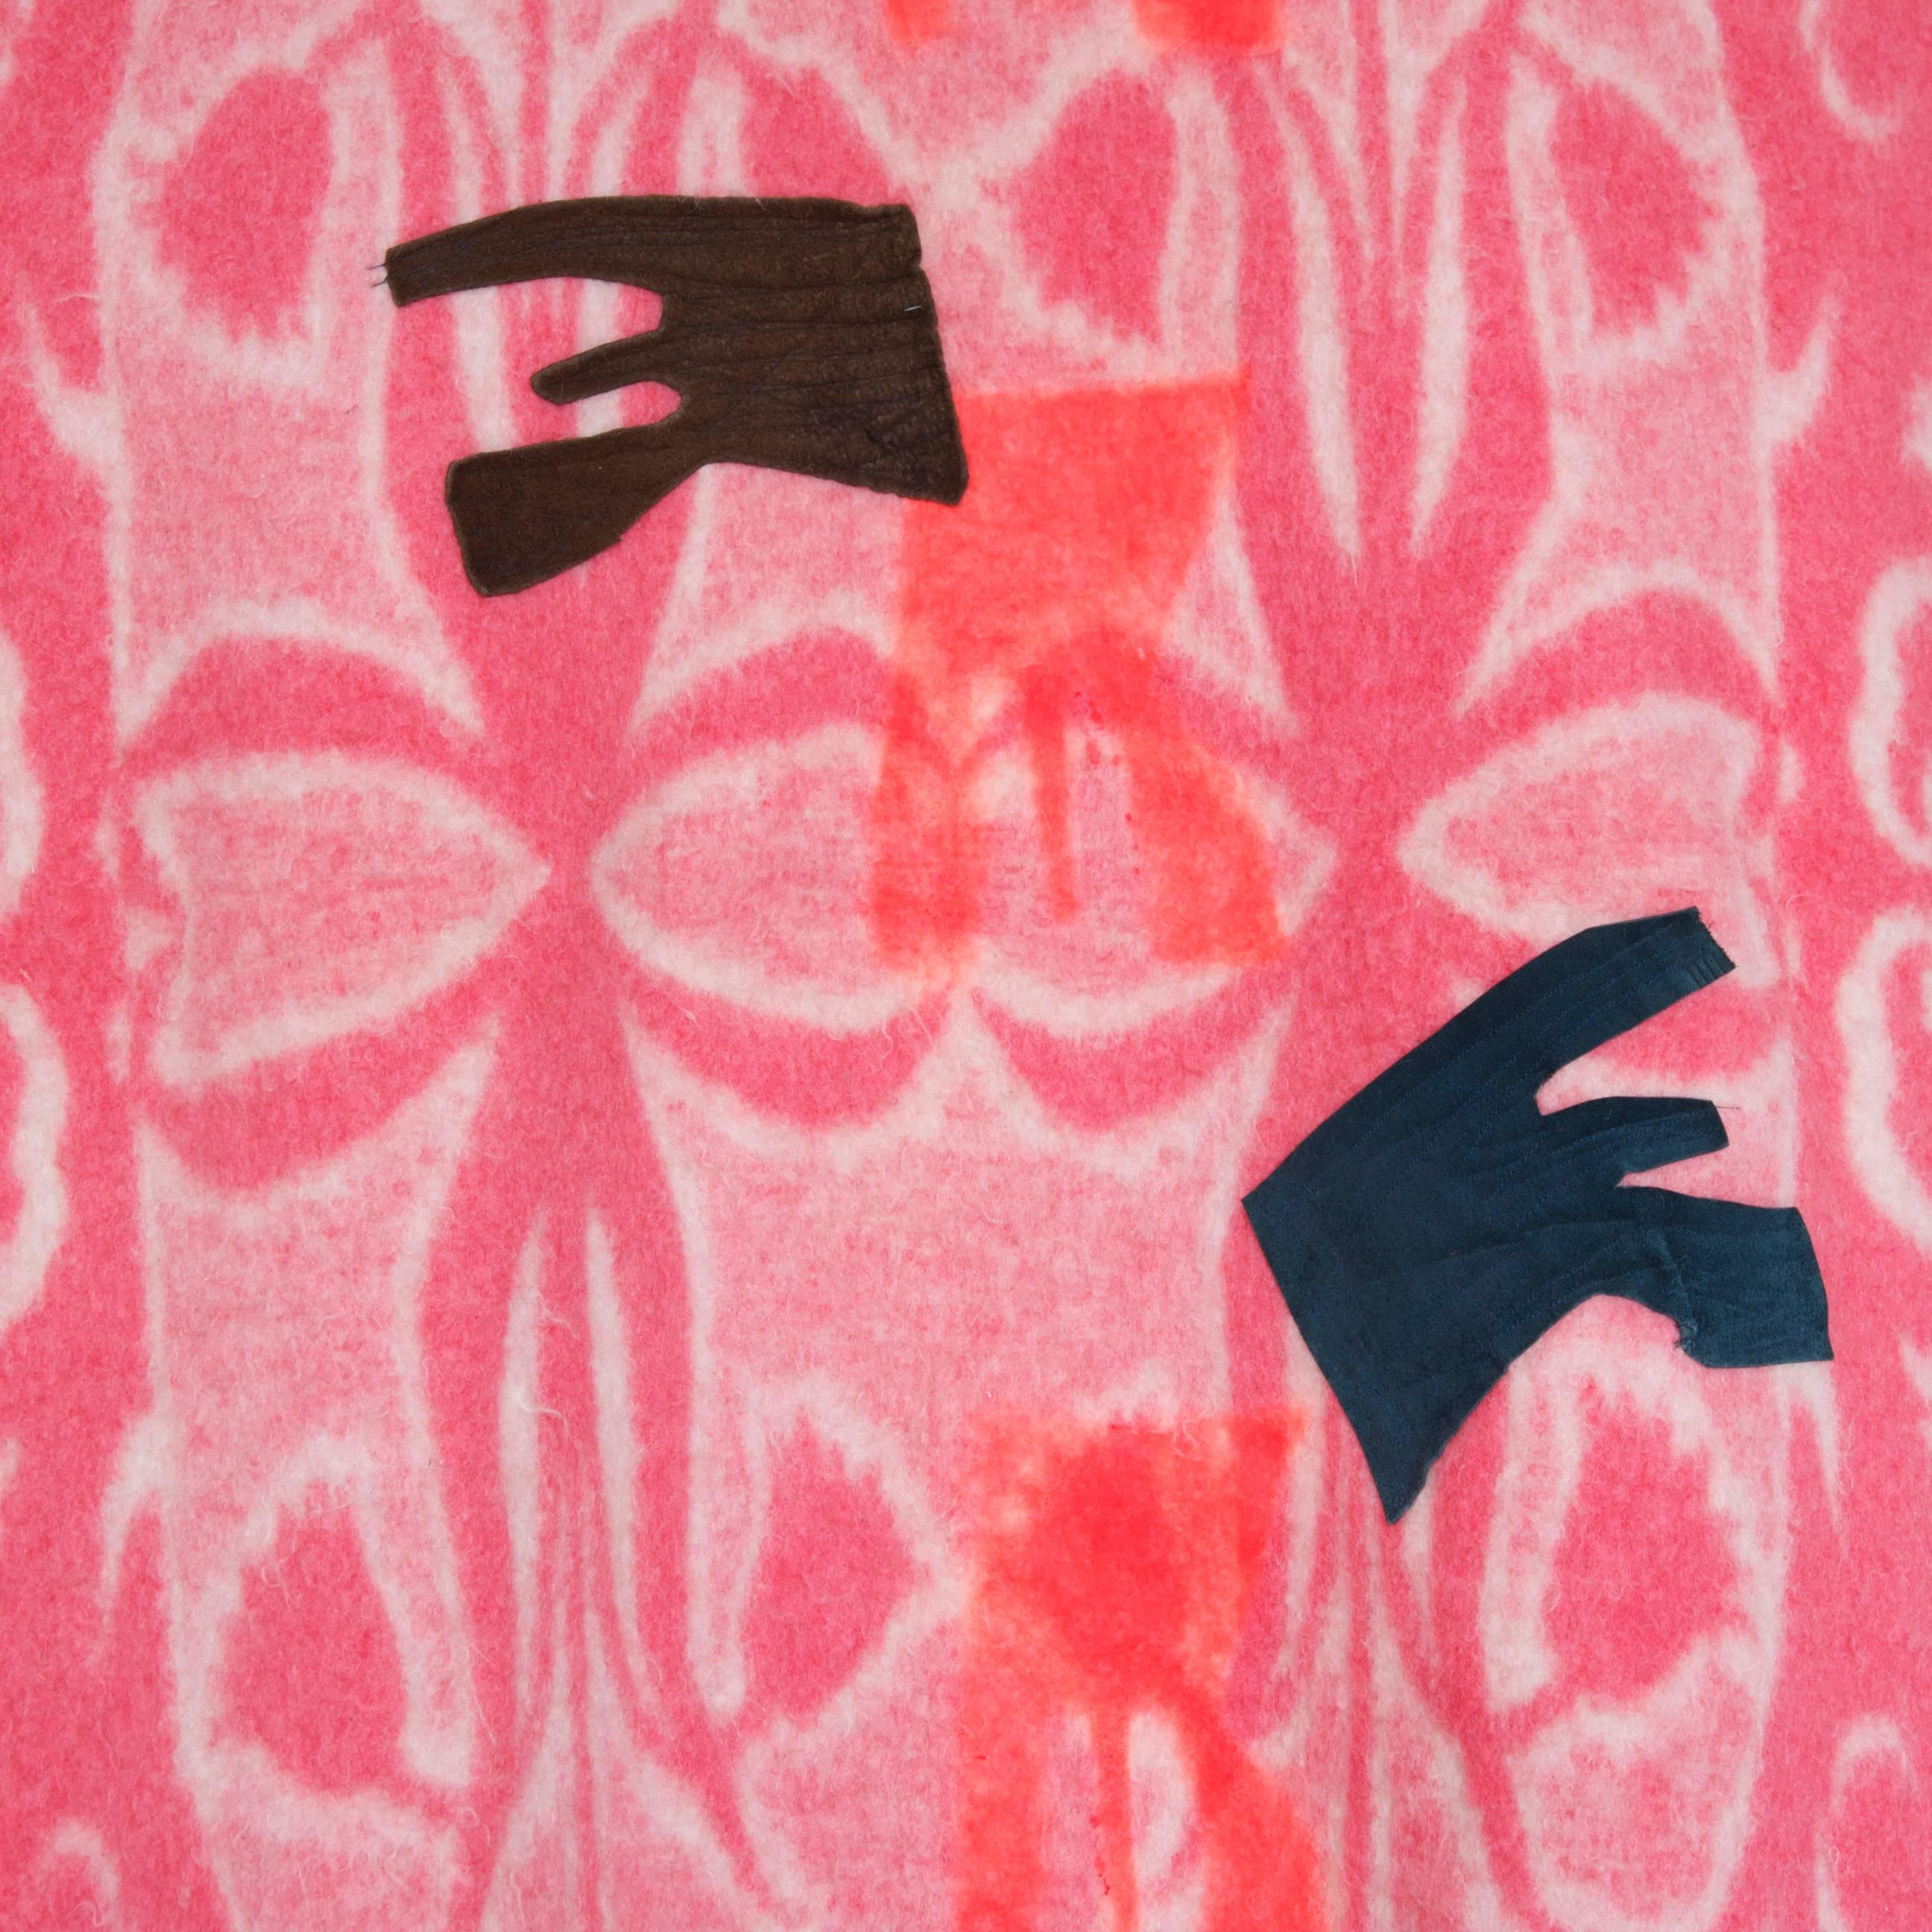 Hergestellt im Jahr 2013 von Naomi Clark

Wolldecke mit Färbung, Farbe und Applizierung

Naomi Clarks Quiltbilder werden aus alten Campingdecken hergestellt, die sie bei Ebay, auf Flohmärkten und bei Garagenverkäufen erworben hat. Sie gestaltet die